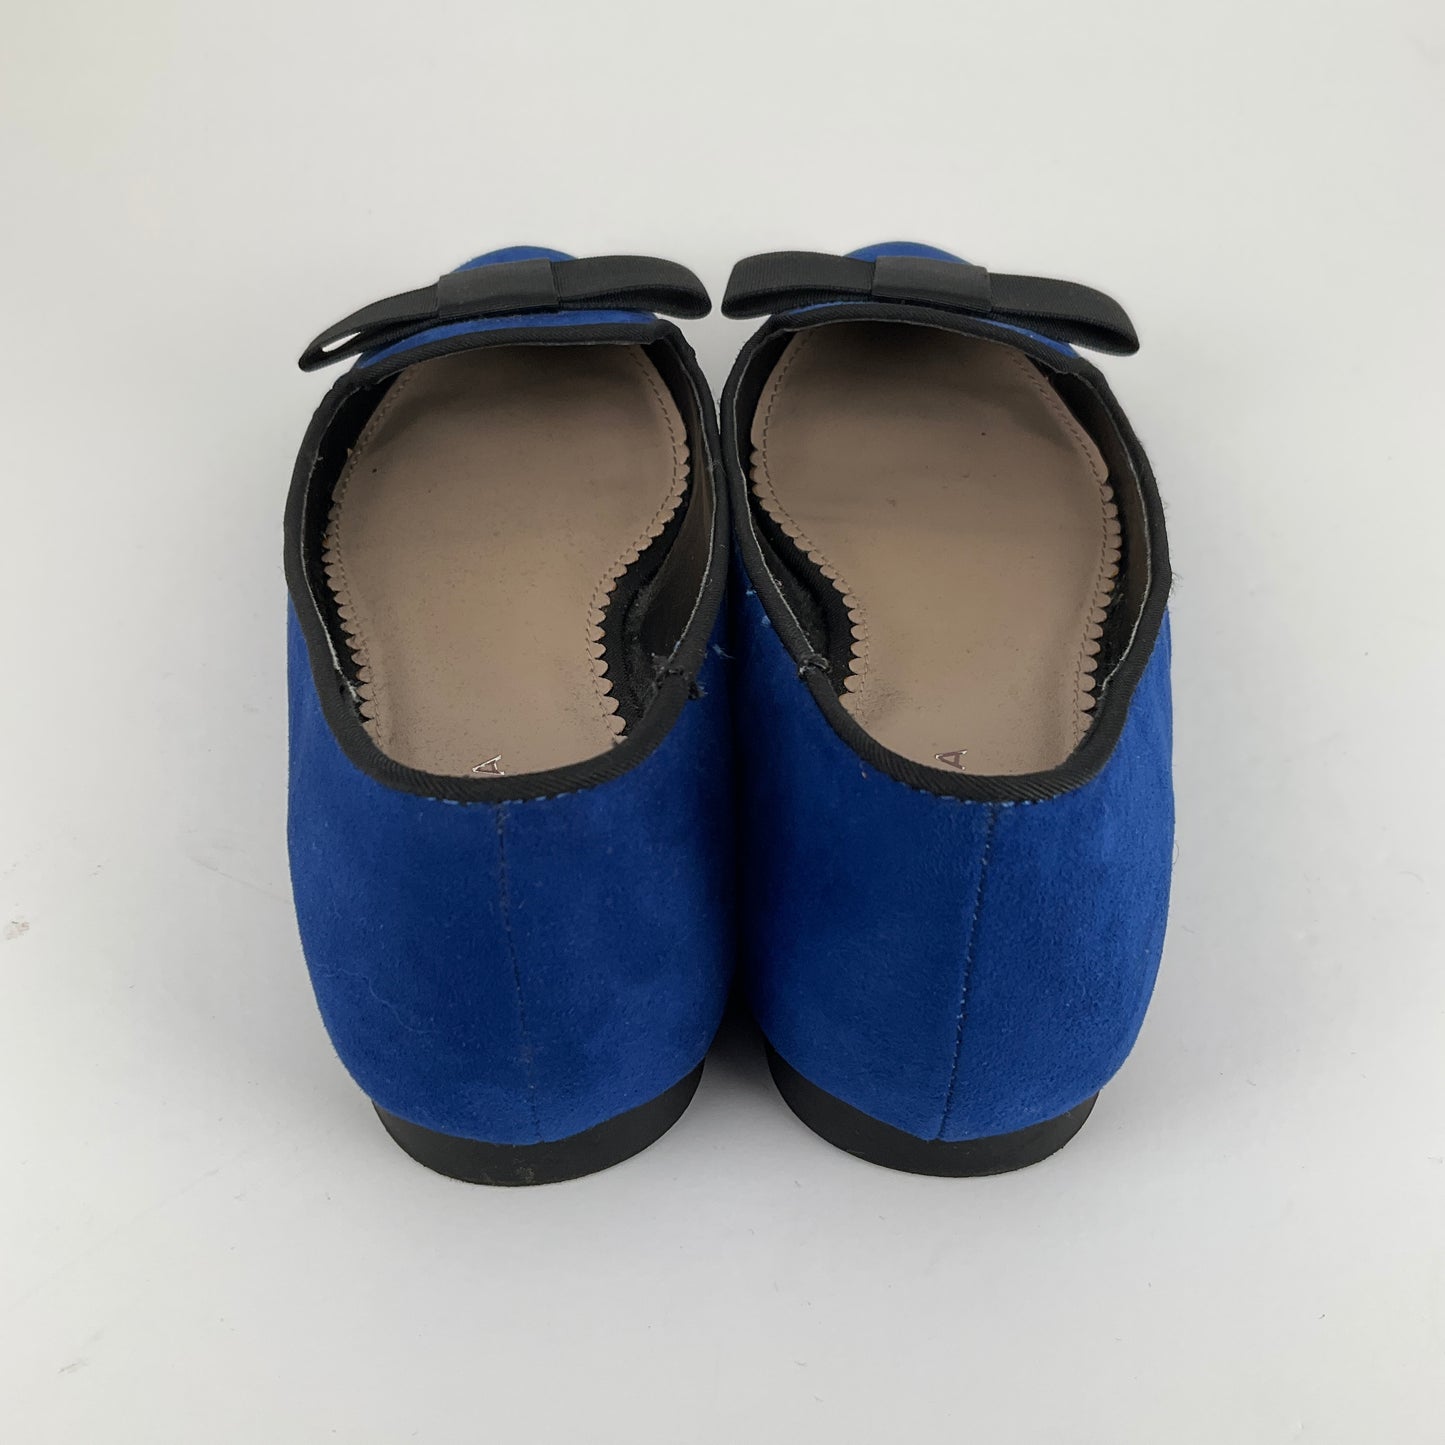 Carvela - Blue Slides - Size 39